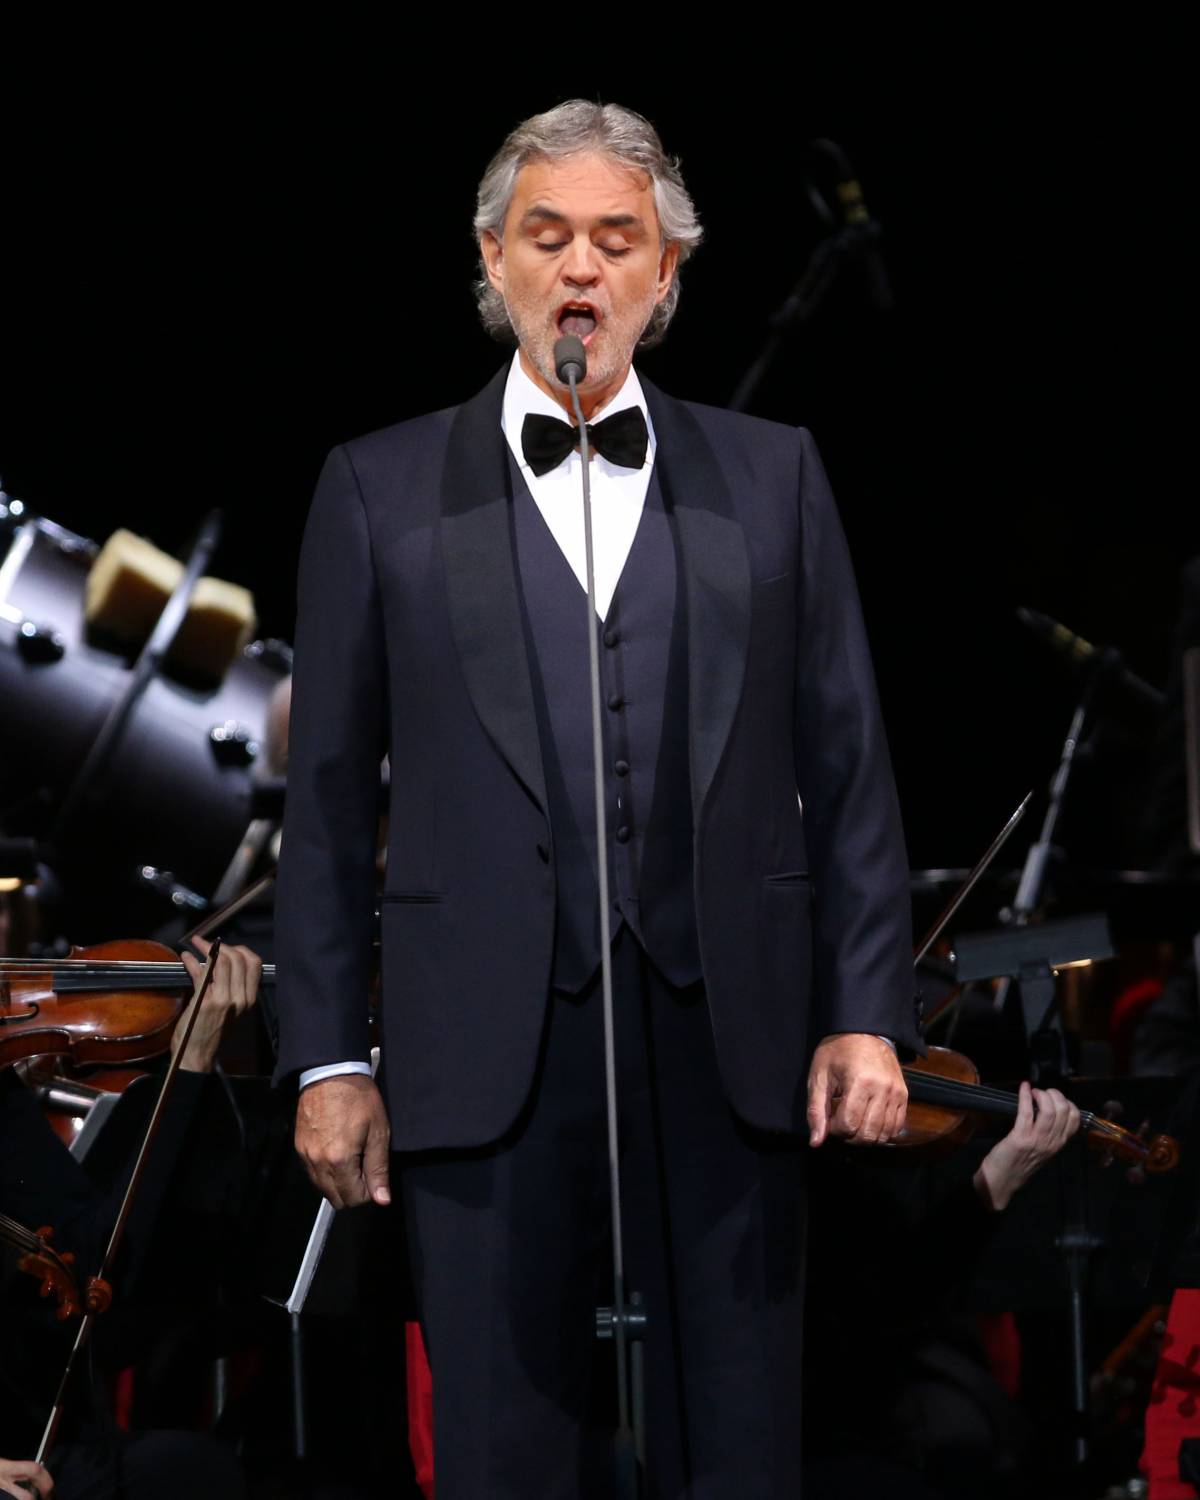 Andrea Bocelli in concerto a Noto come testimonial dei siti Unesco siciliani